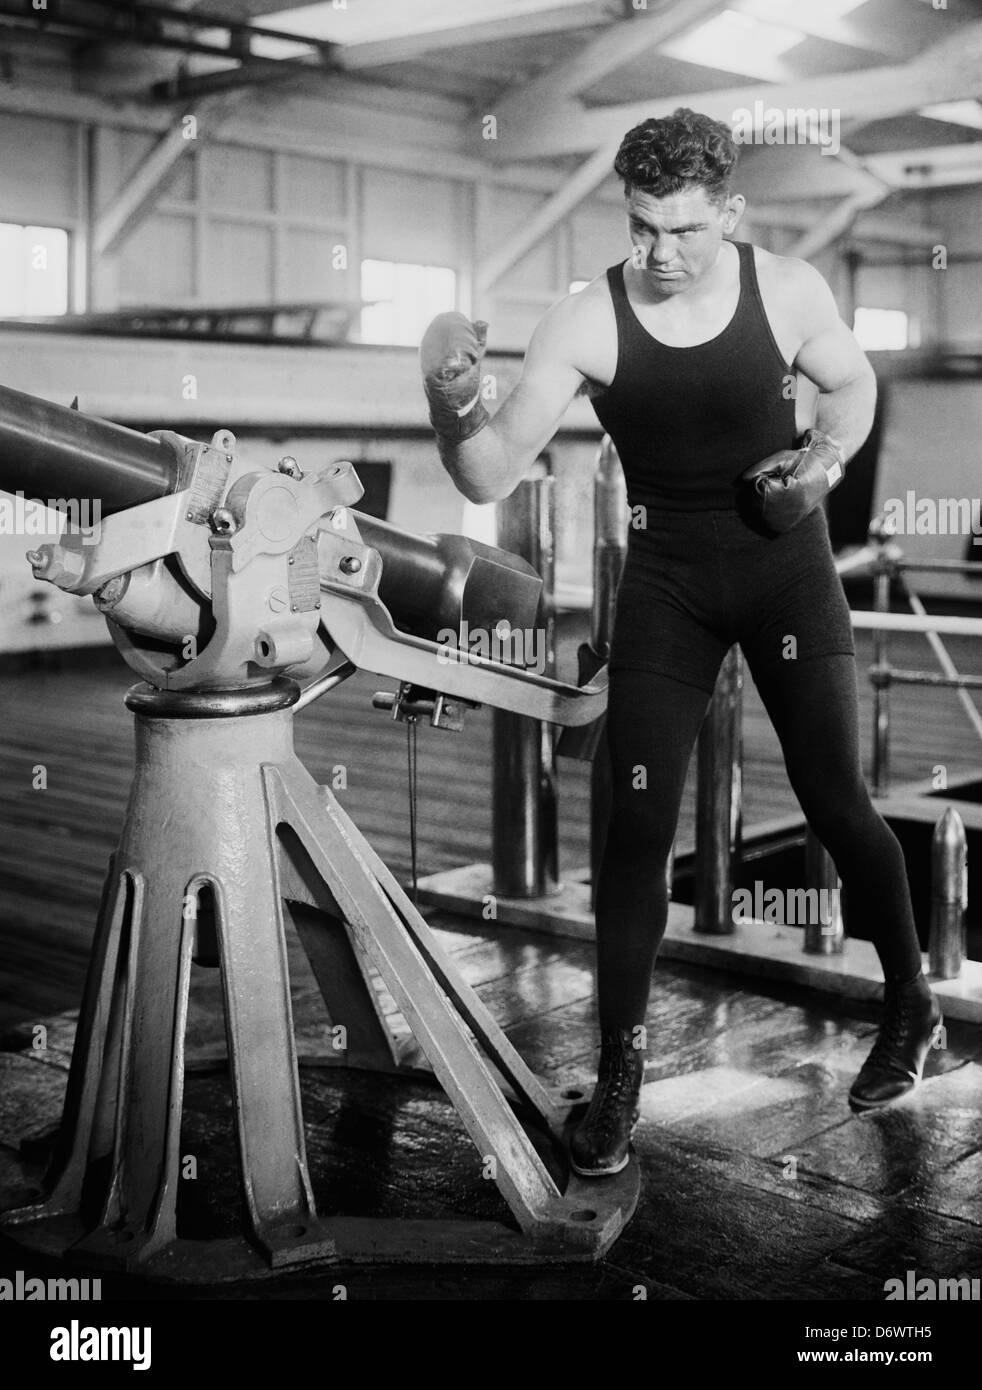 Oldtimer-Foto von Boxer Jack Dempsey (1895 – 1983) – Dempsey, bekannt als „der Manassa Mauler“, war von 1919 bis 1926 Weltmeister im Schwergewicht. Foto ca. 1920 – 1925. Stockfoto